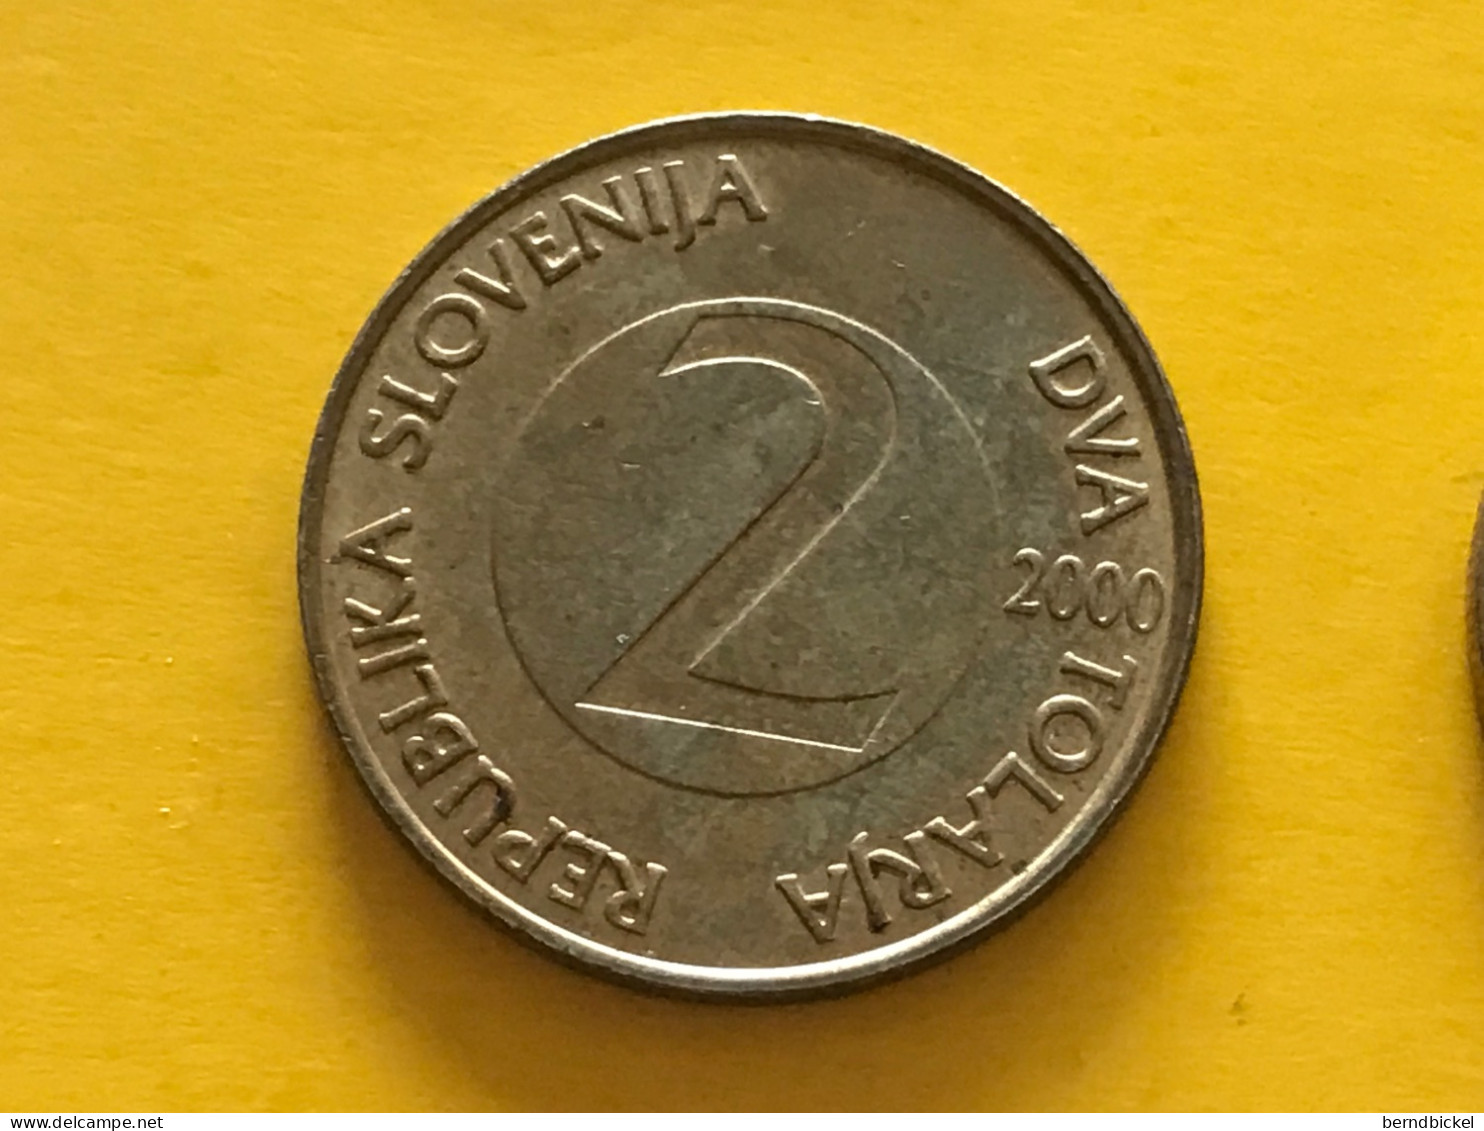 Münze Münzen Umlaufmünze Slowenien 2 Tolar 2000 - Slovenië